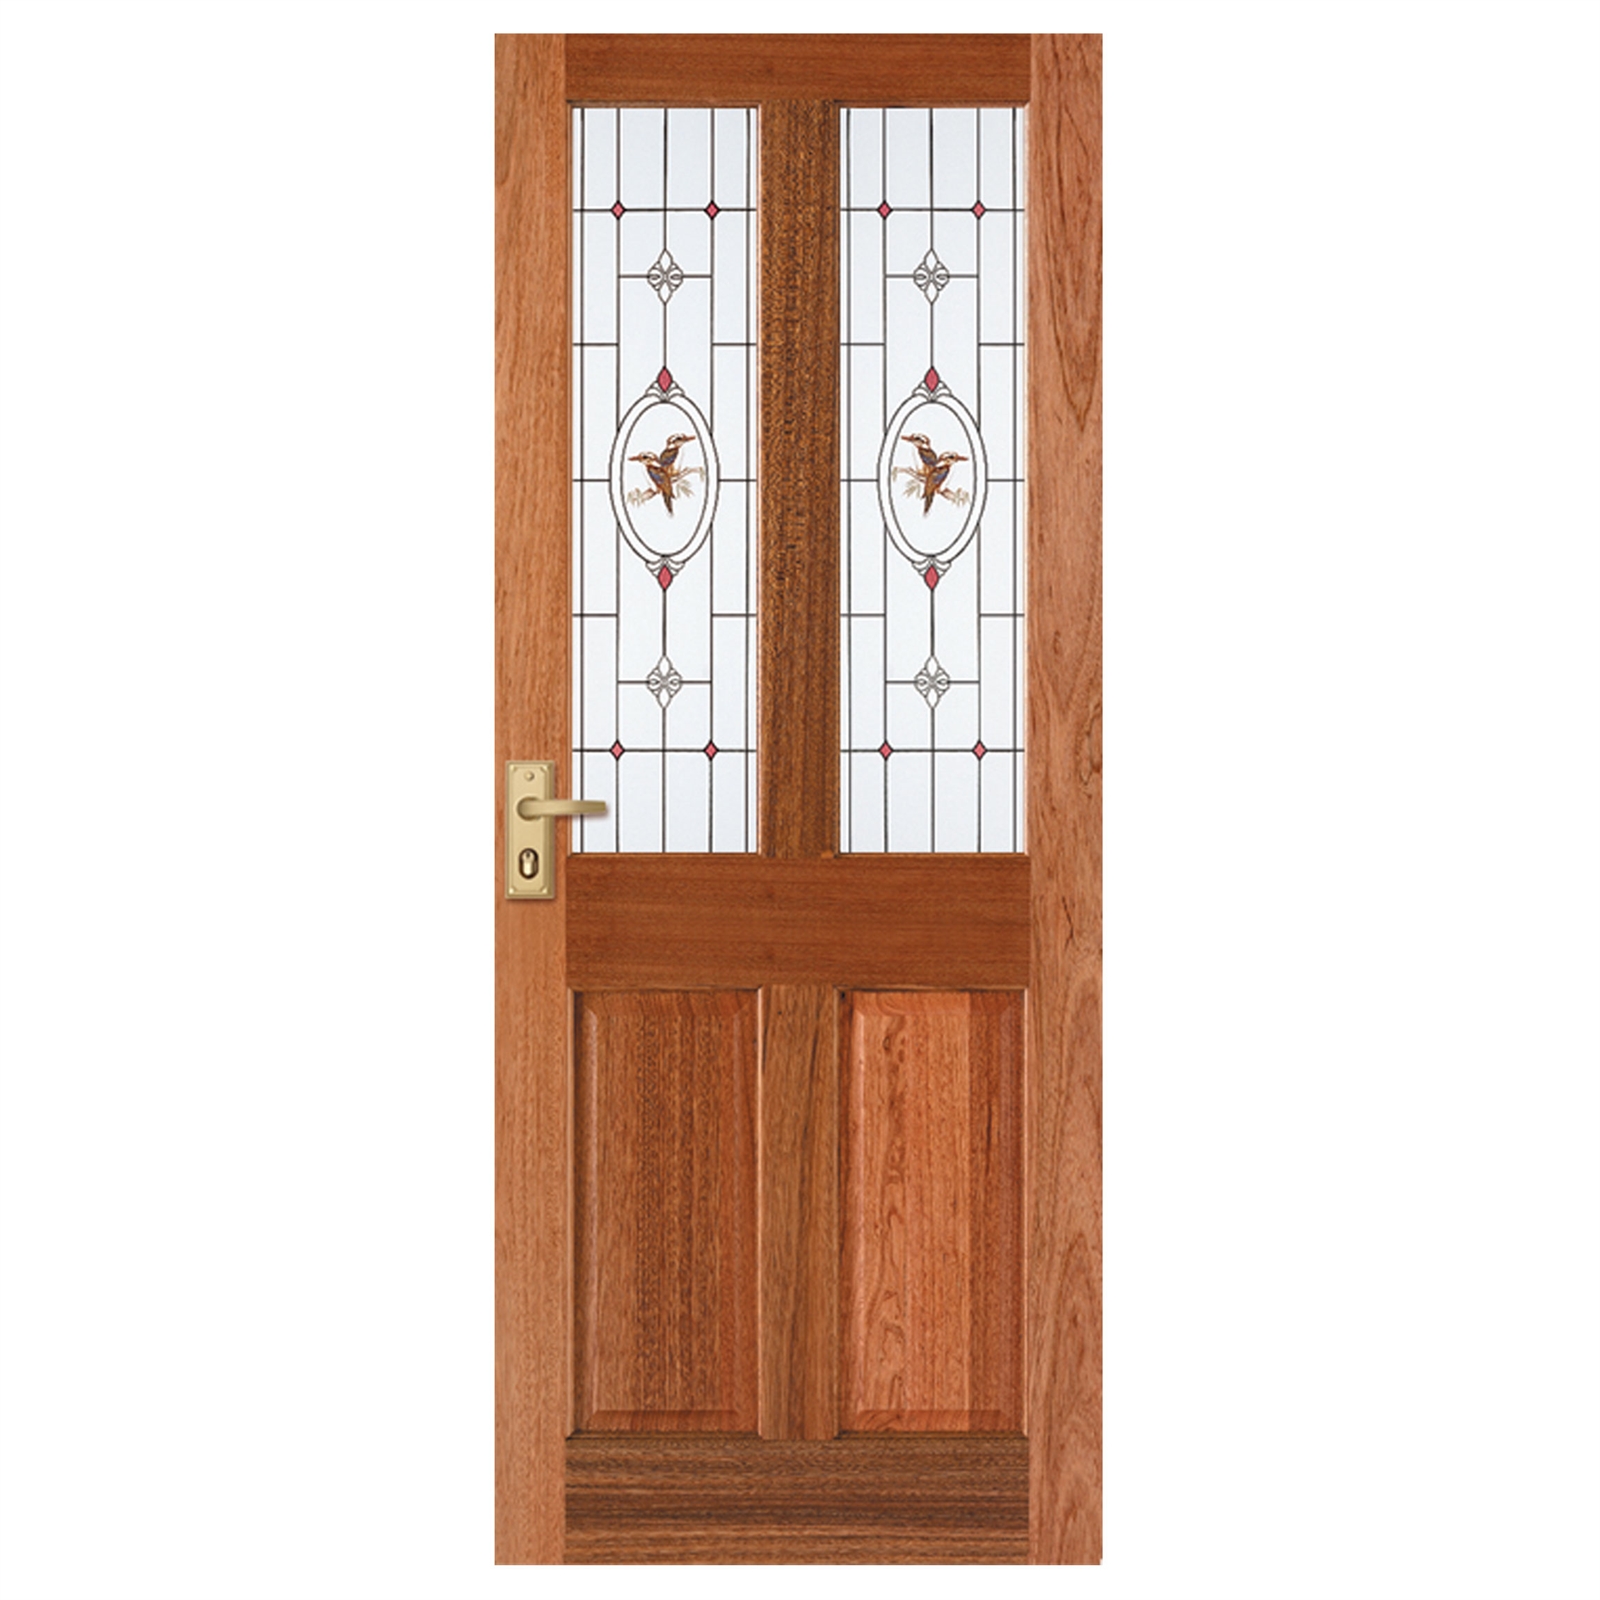 Corinthian Doors 2040 x 820 x 40mm Windsor Kookaburra Jewel Entrance Door